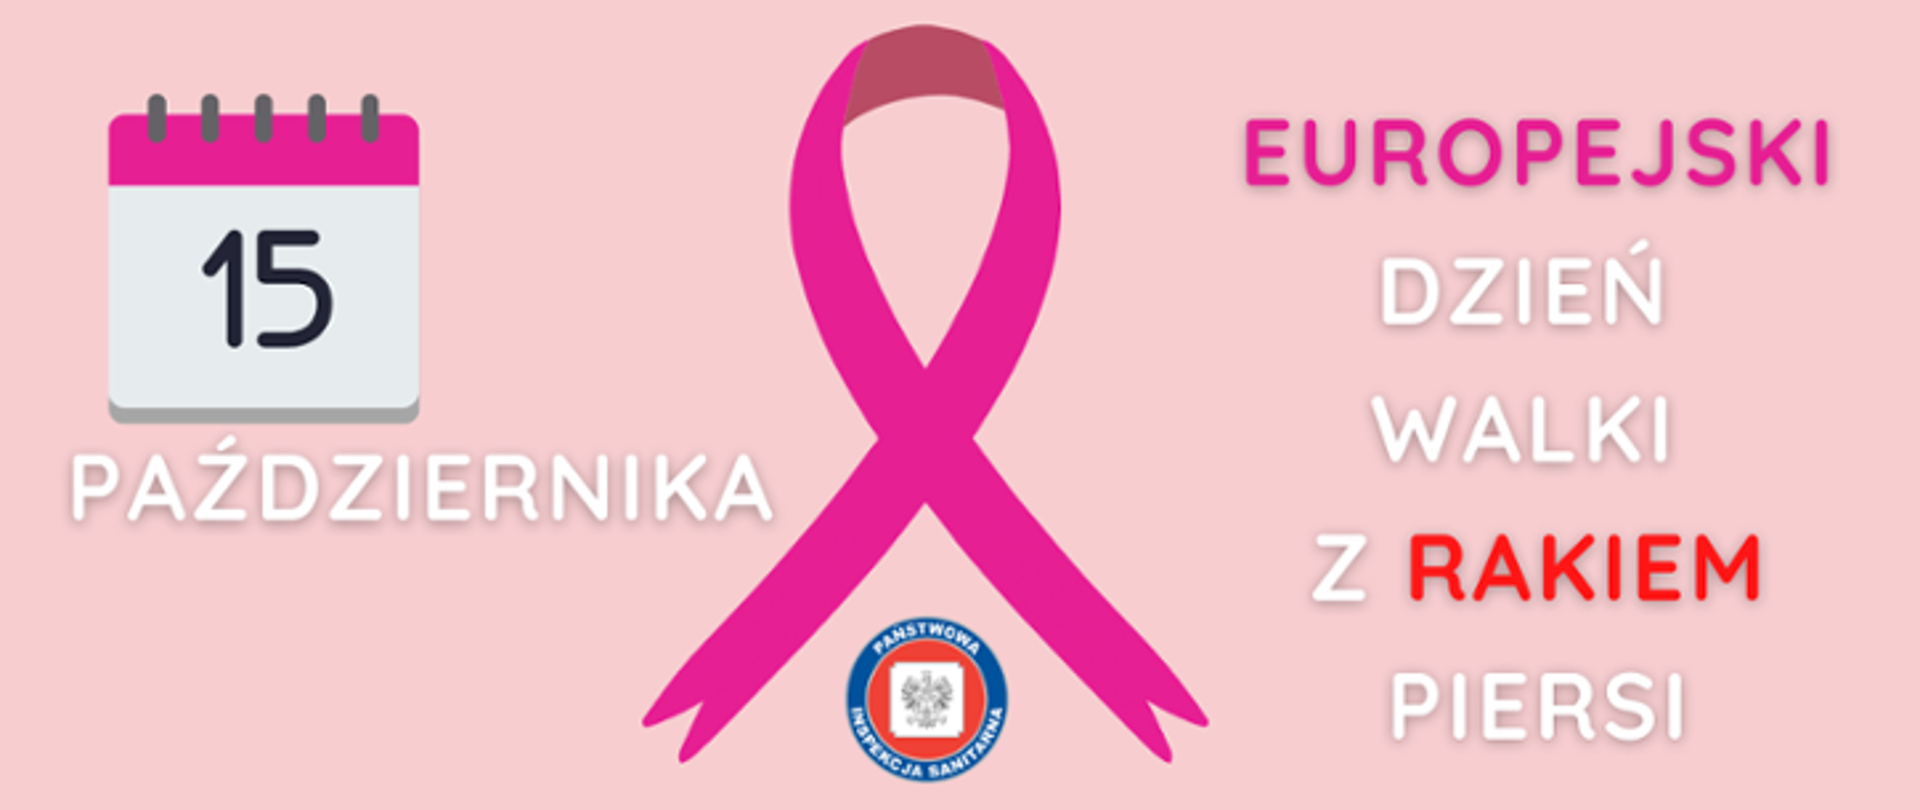 W centrum znajduje się różowa wstążka. Po jej lewej stronie widnieje grafika kalendarza z napisem 15 października. Po prawej stronie natomiast widnieje napis Europejski Dzień Walki z Rakiem Piersi. Tło jest różowe.